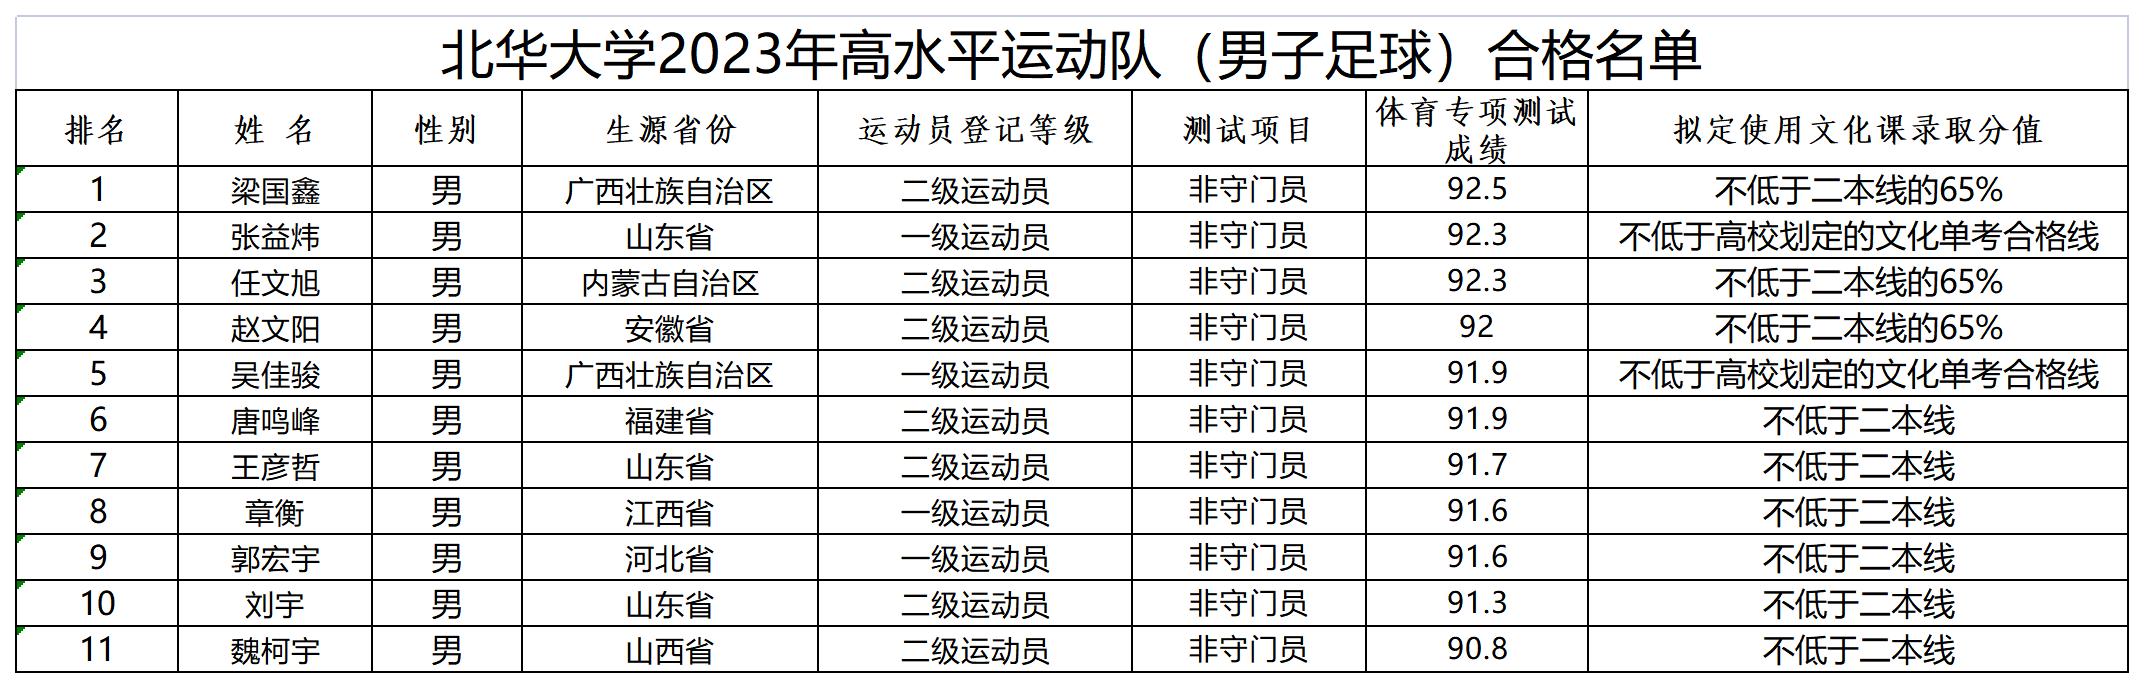 北華大學2023年高水平運動隊（男子足球）合格名單_Sheet1.jpg